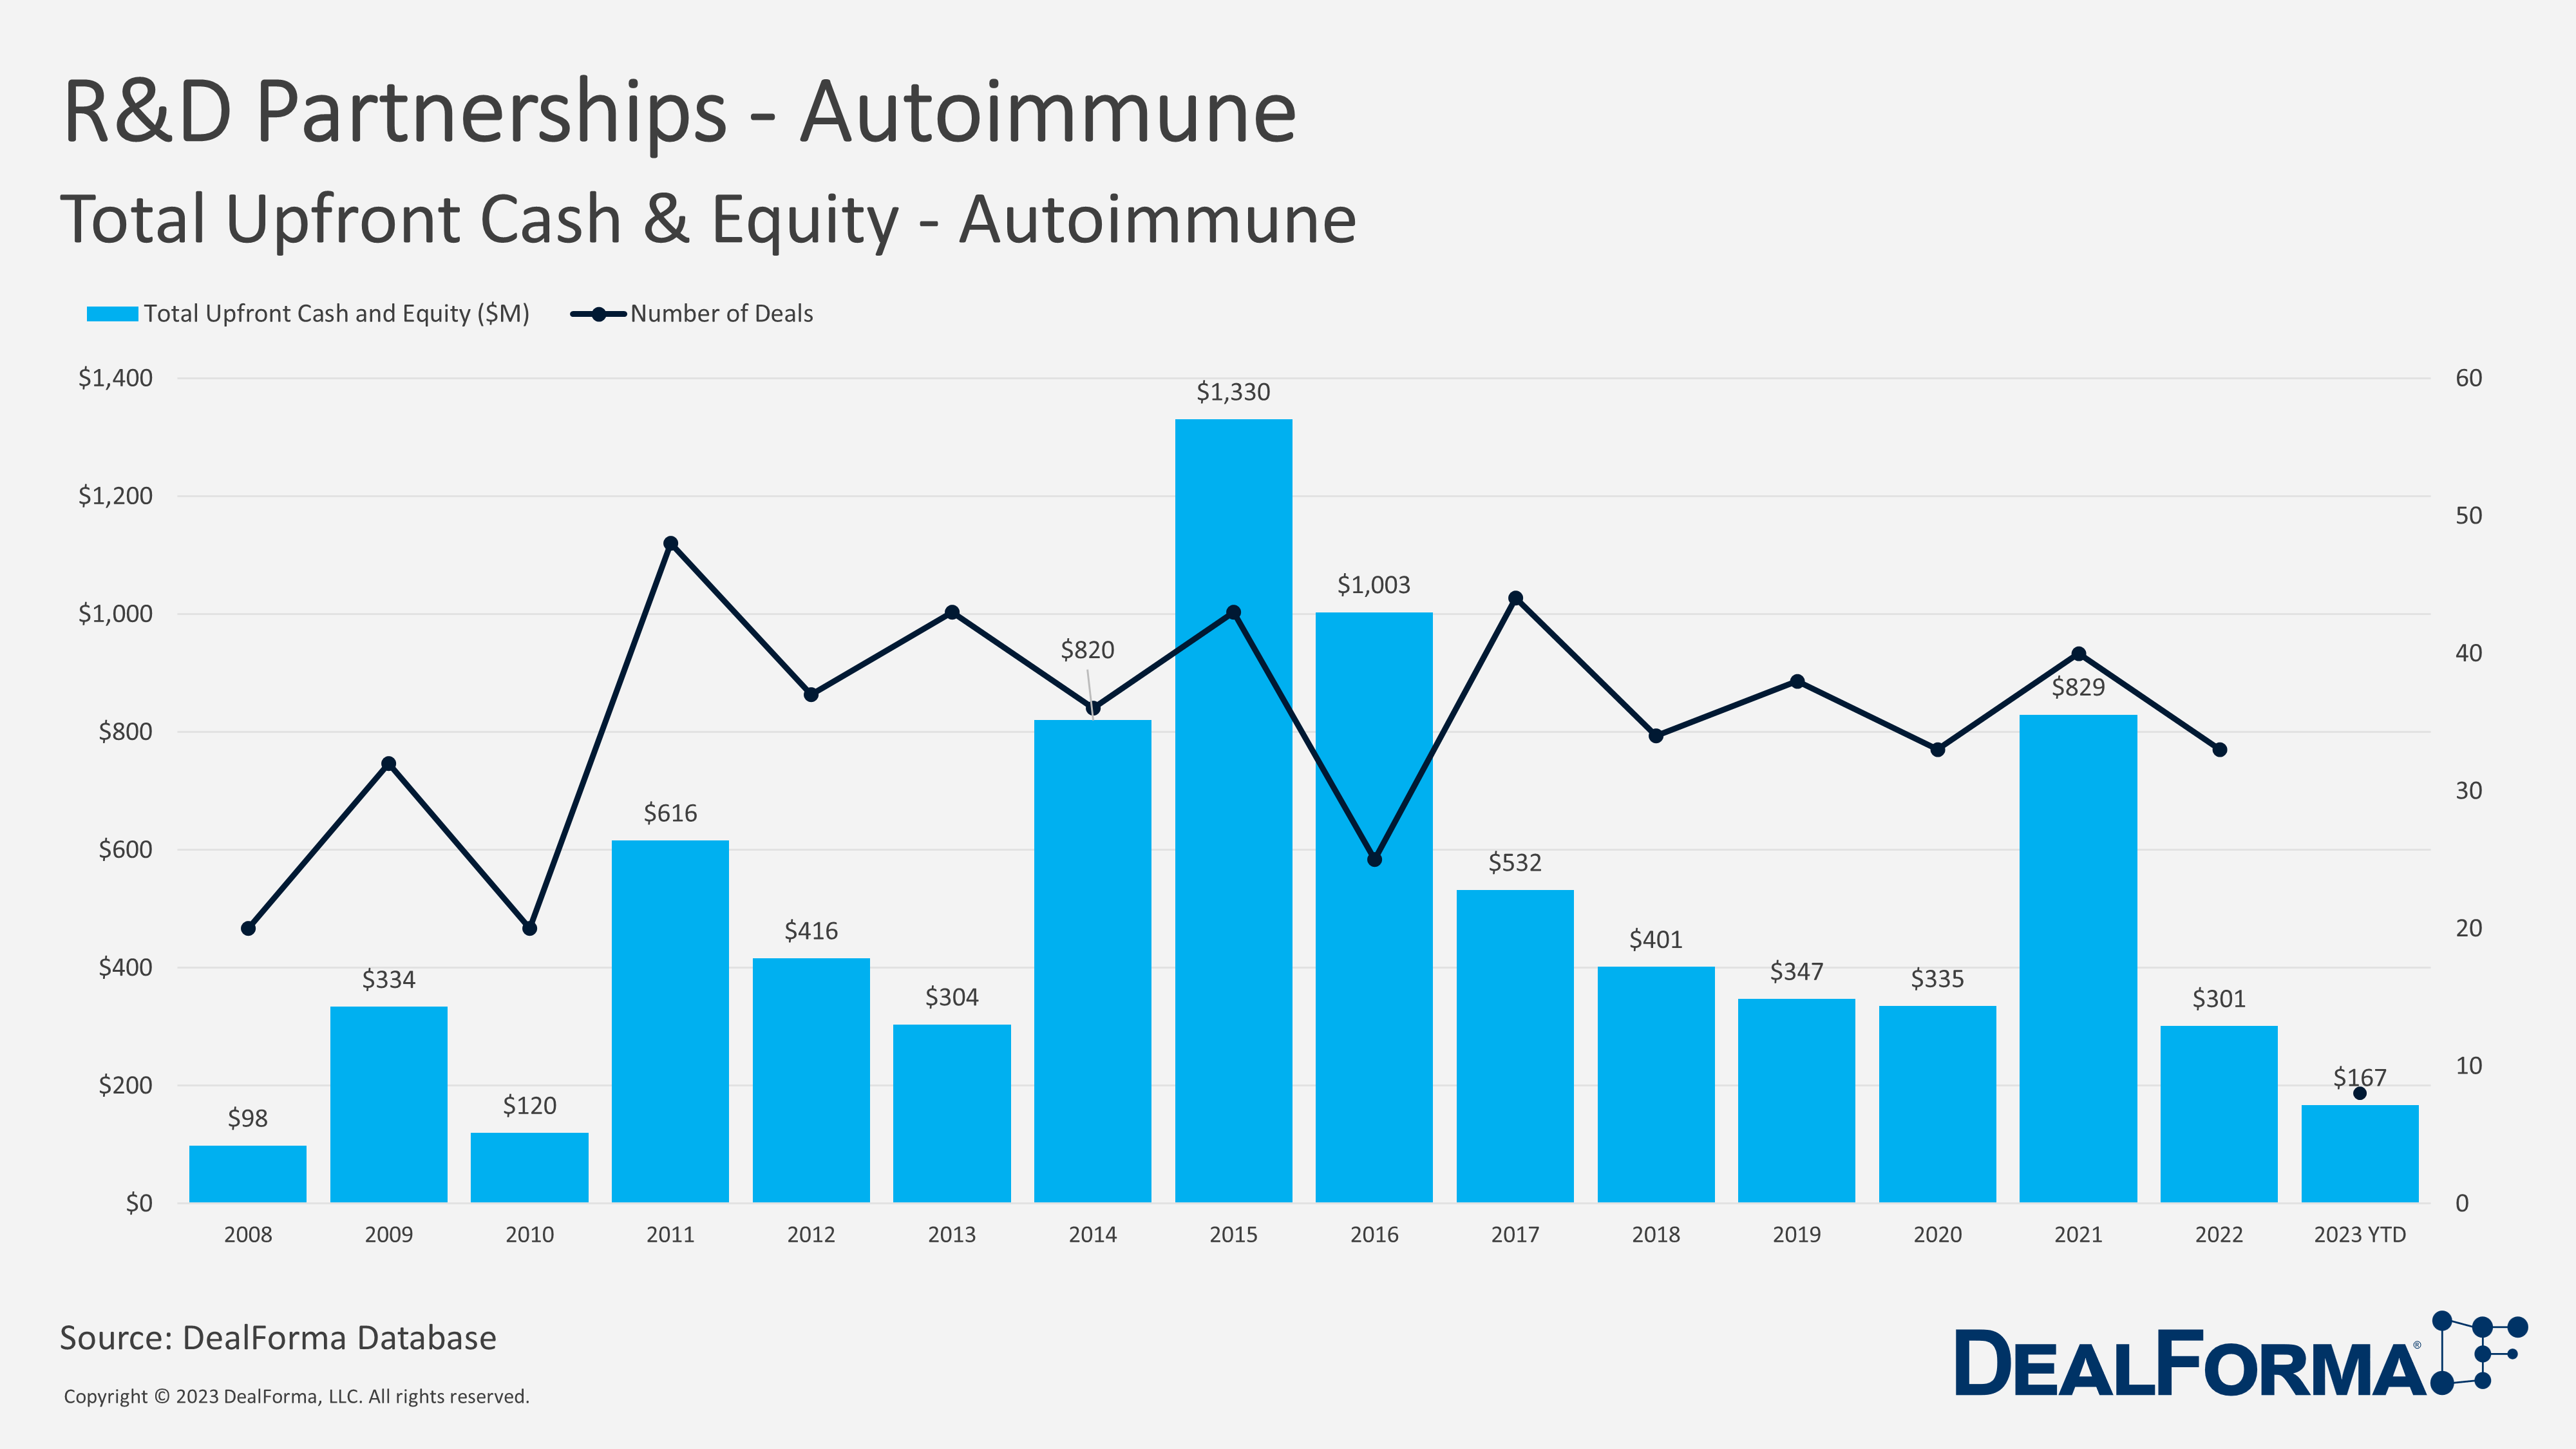 R&D Partnerships - Autoimmune. Total Upfront Cash & Equity